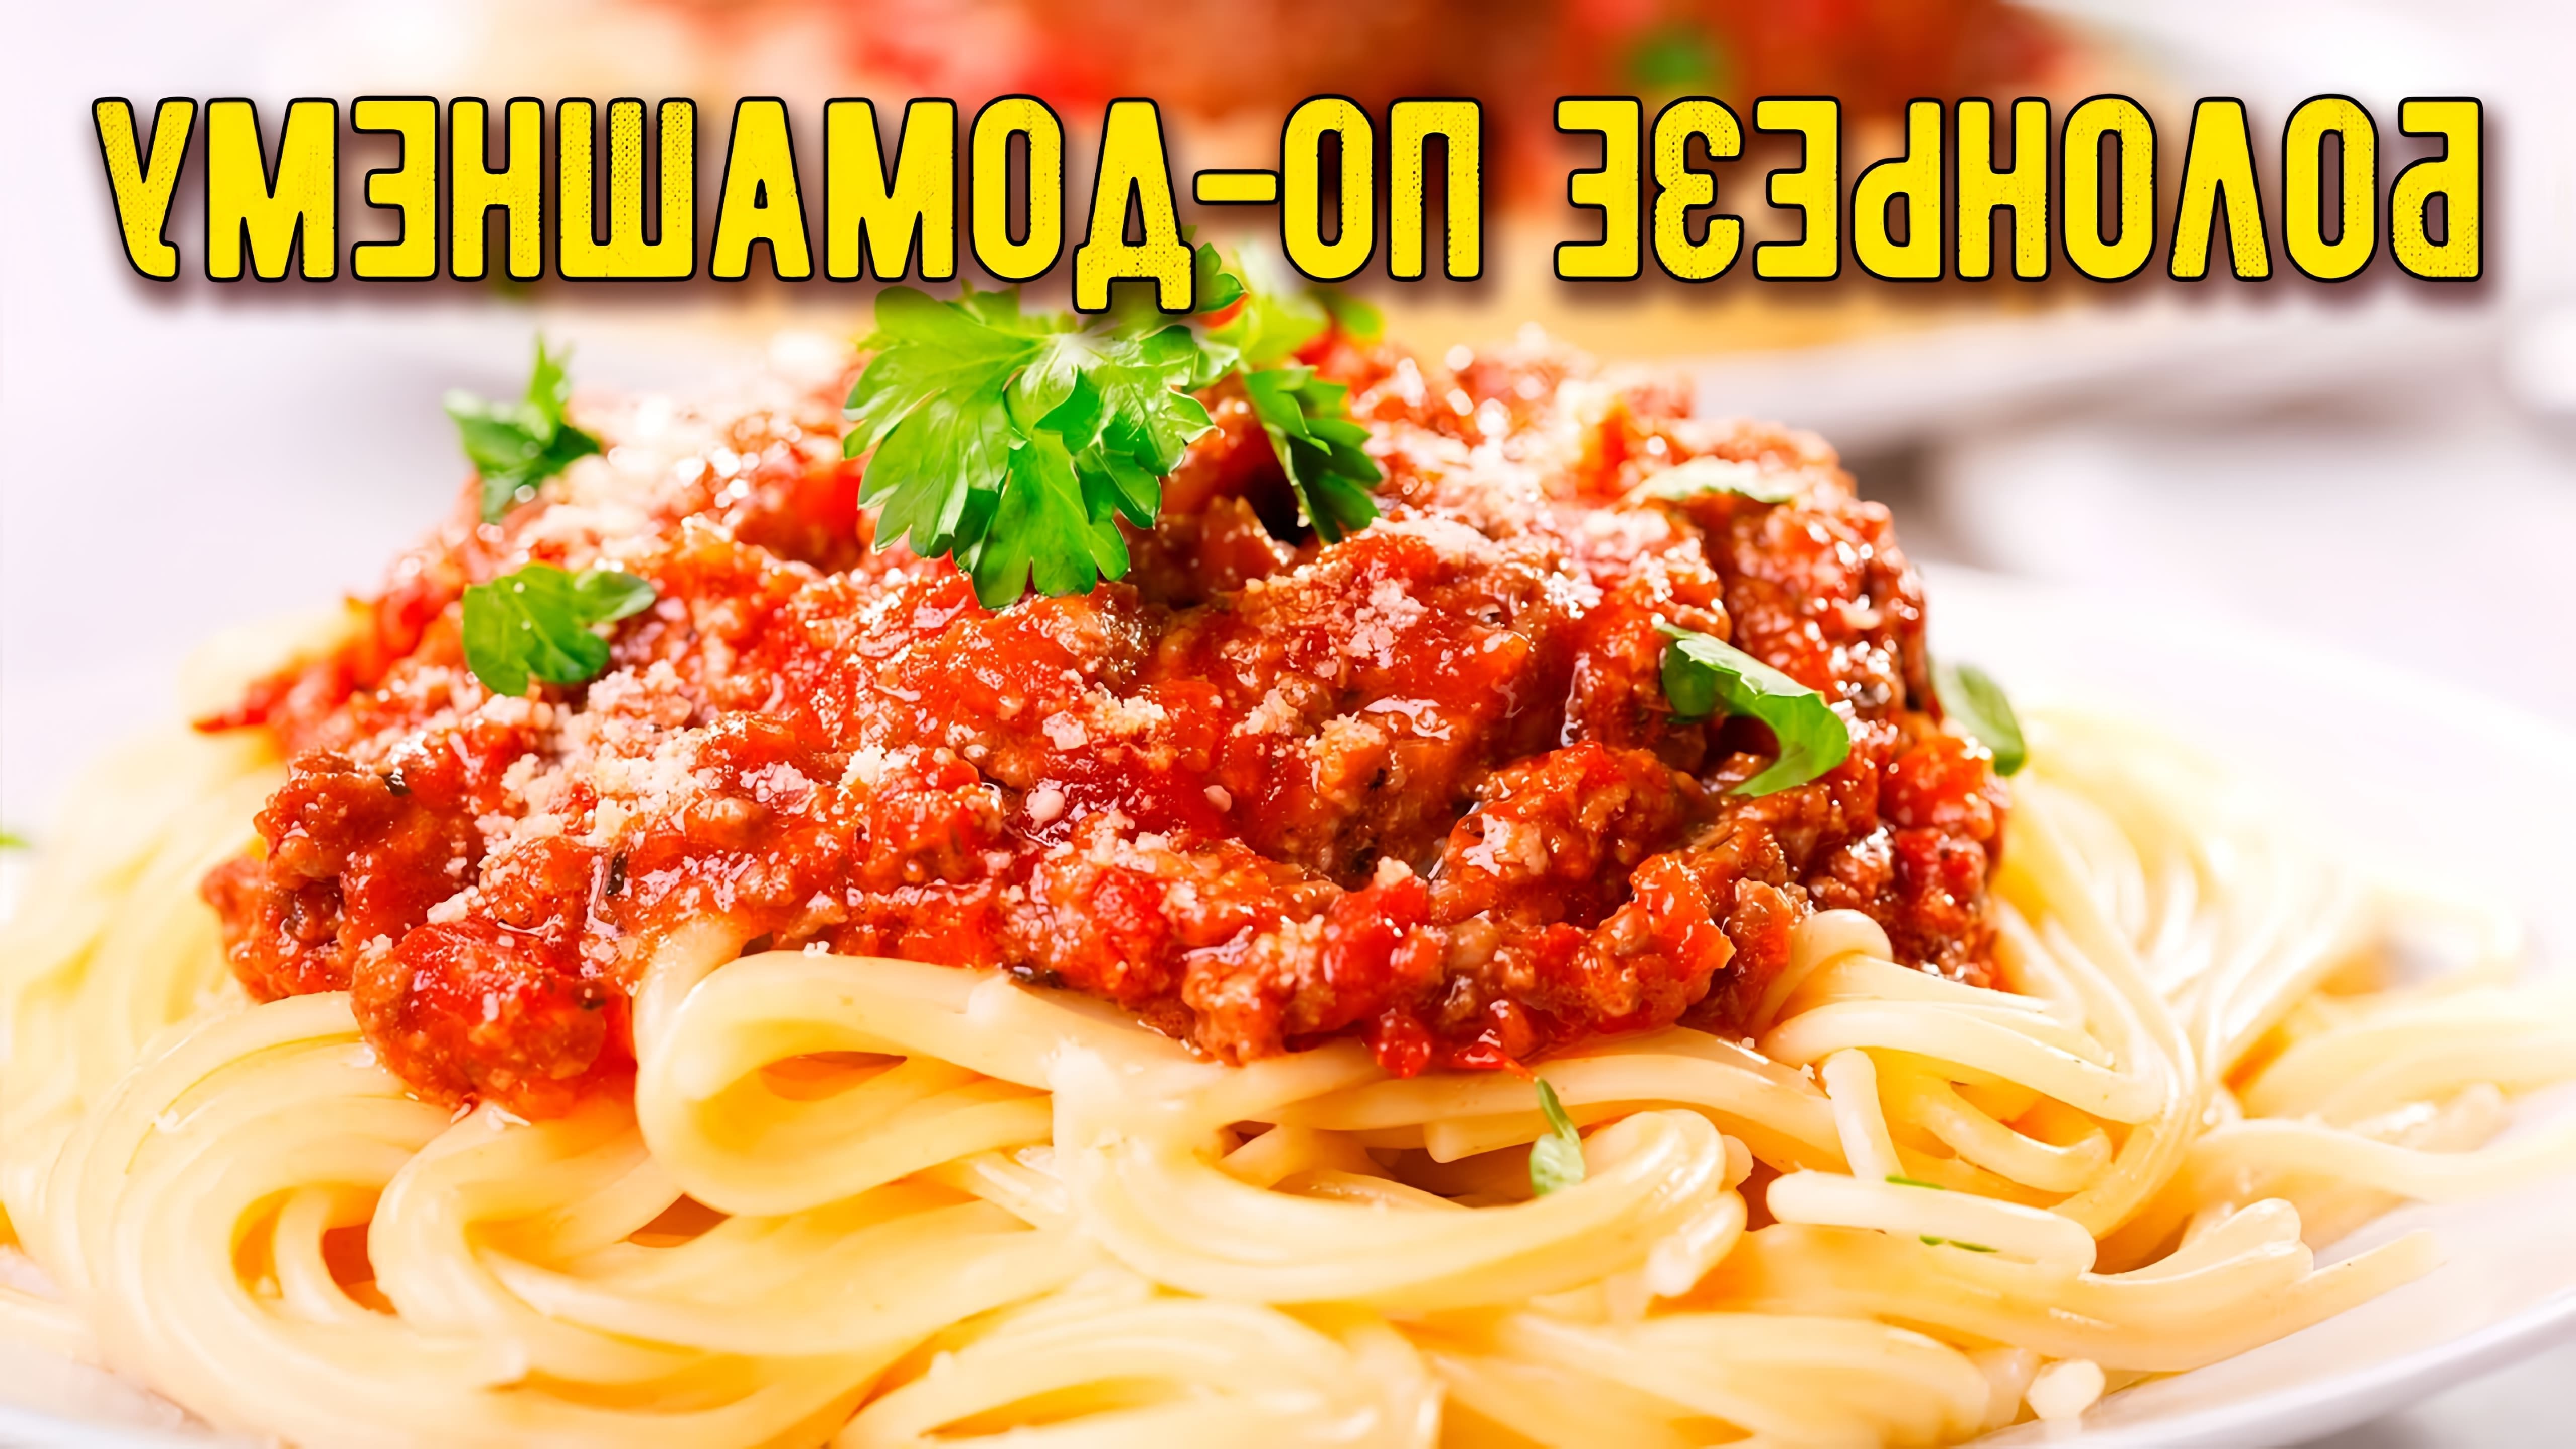 В этом видео демонстрируется процесс приготовления итальянского блюда - спагетти с соусом болоньезе